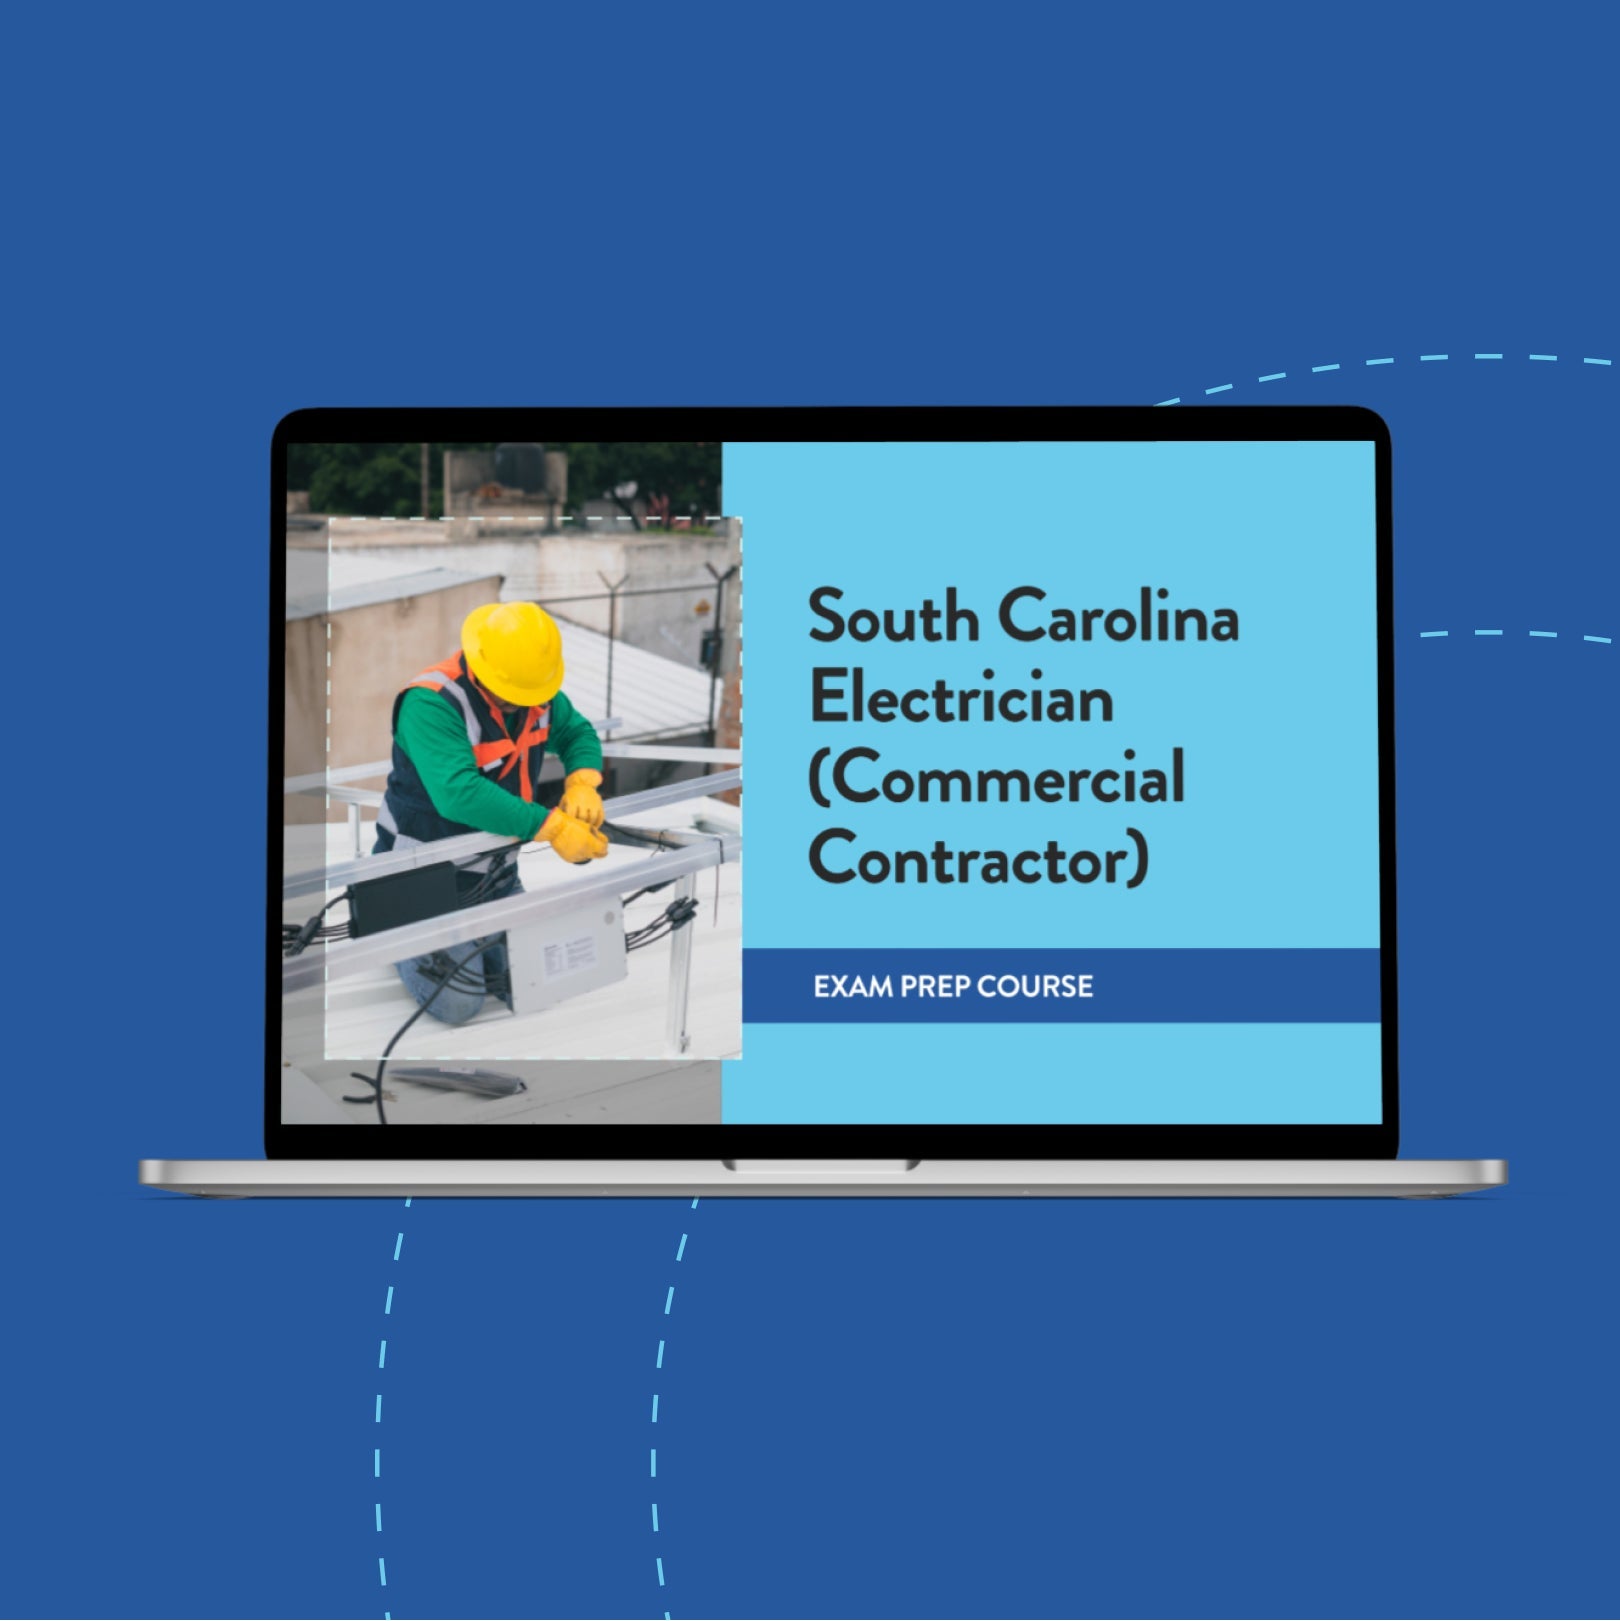 South Carolina Electrician (Commercial Contractor) Exam Prep Course